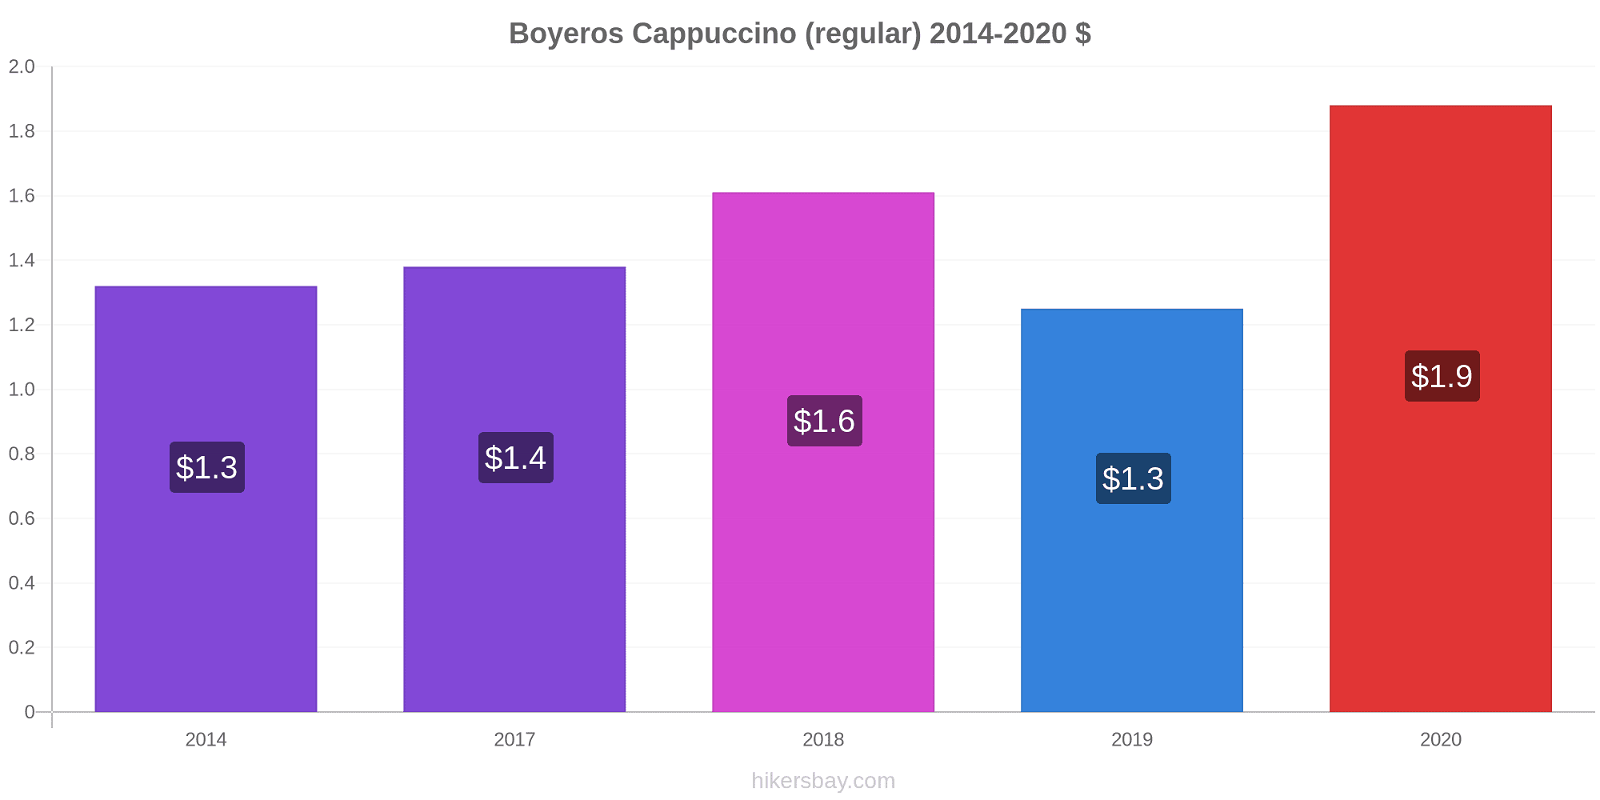 Boyeros variação de preço Capuccino (regular) hikersbay.com